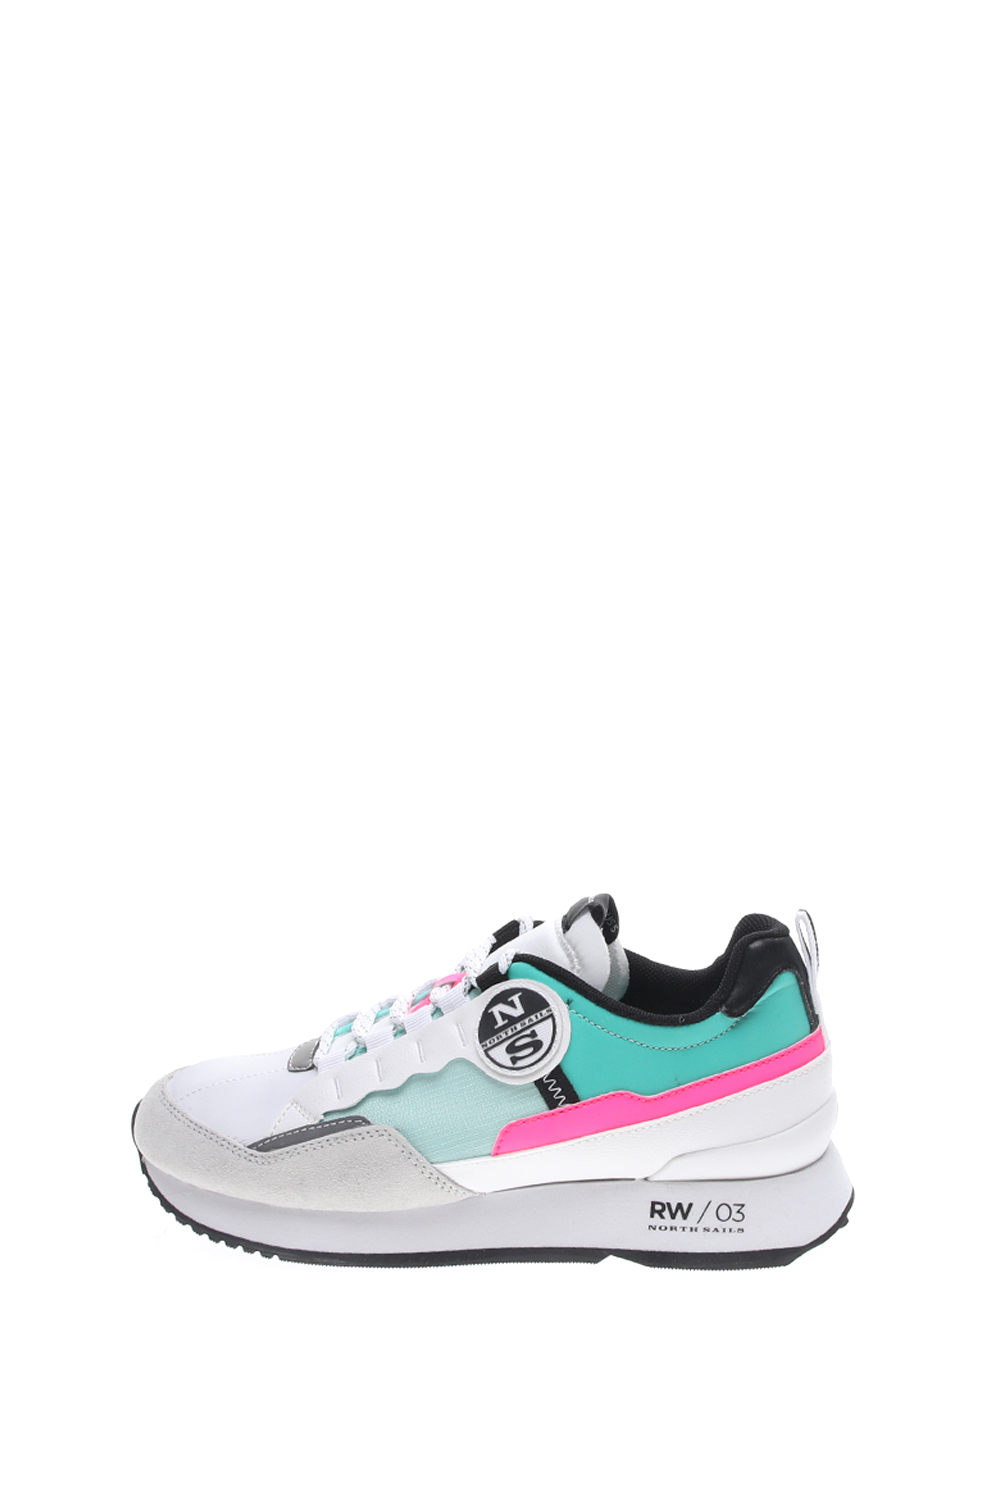 Γυναικεία/Παπούτσια/Sneakers NORTH SAILS - Γυναικεία sneakers NORTH SAILS REEF λευκά μπλε ροζ